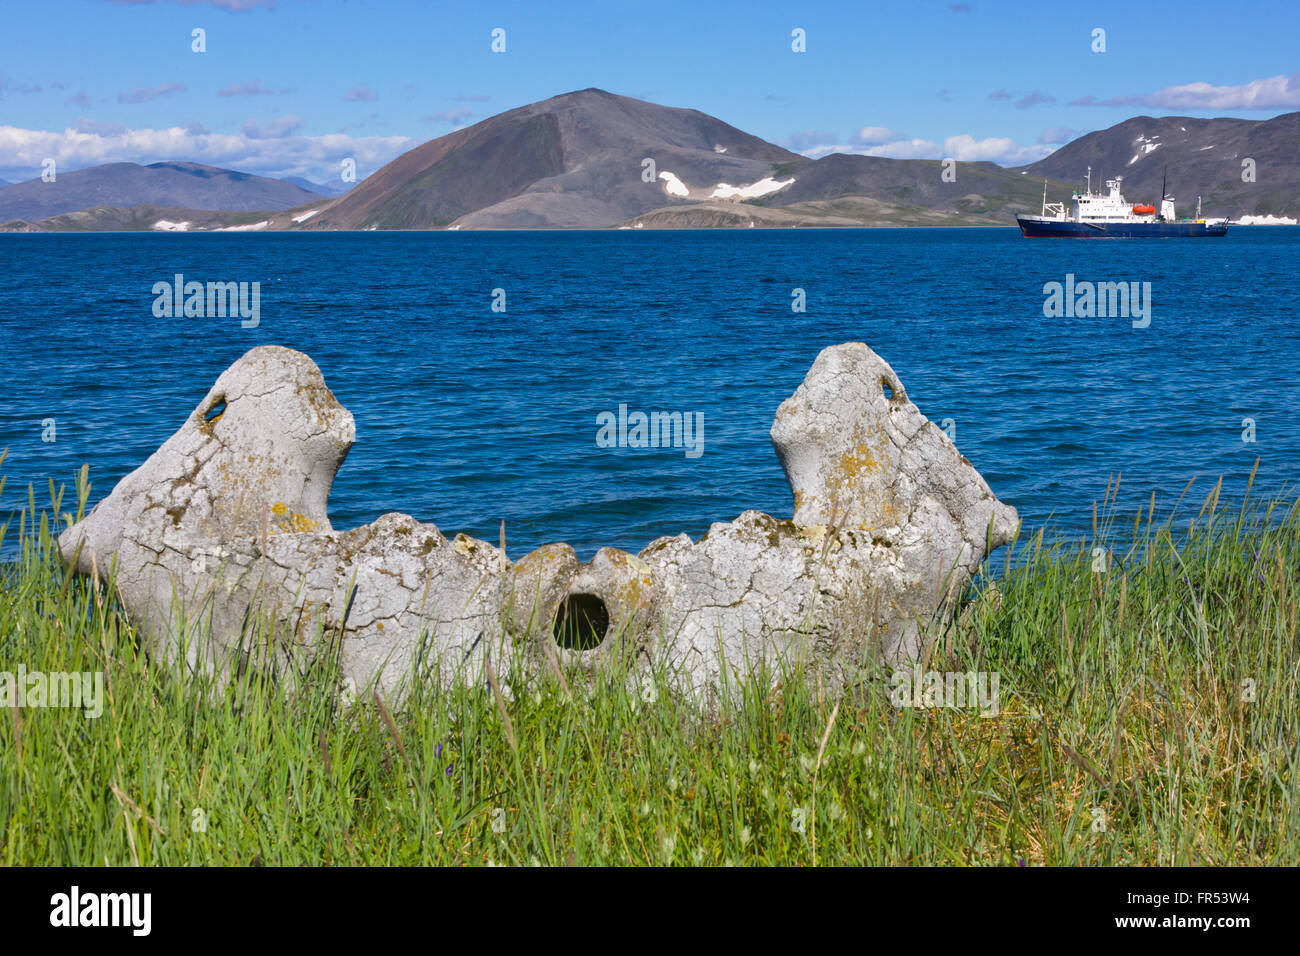 Hueso de la mandíbula de ballena, Isla Yttygran, Mar de Bering, Lejano Oriente ruso Foto de stock